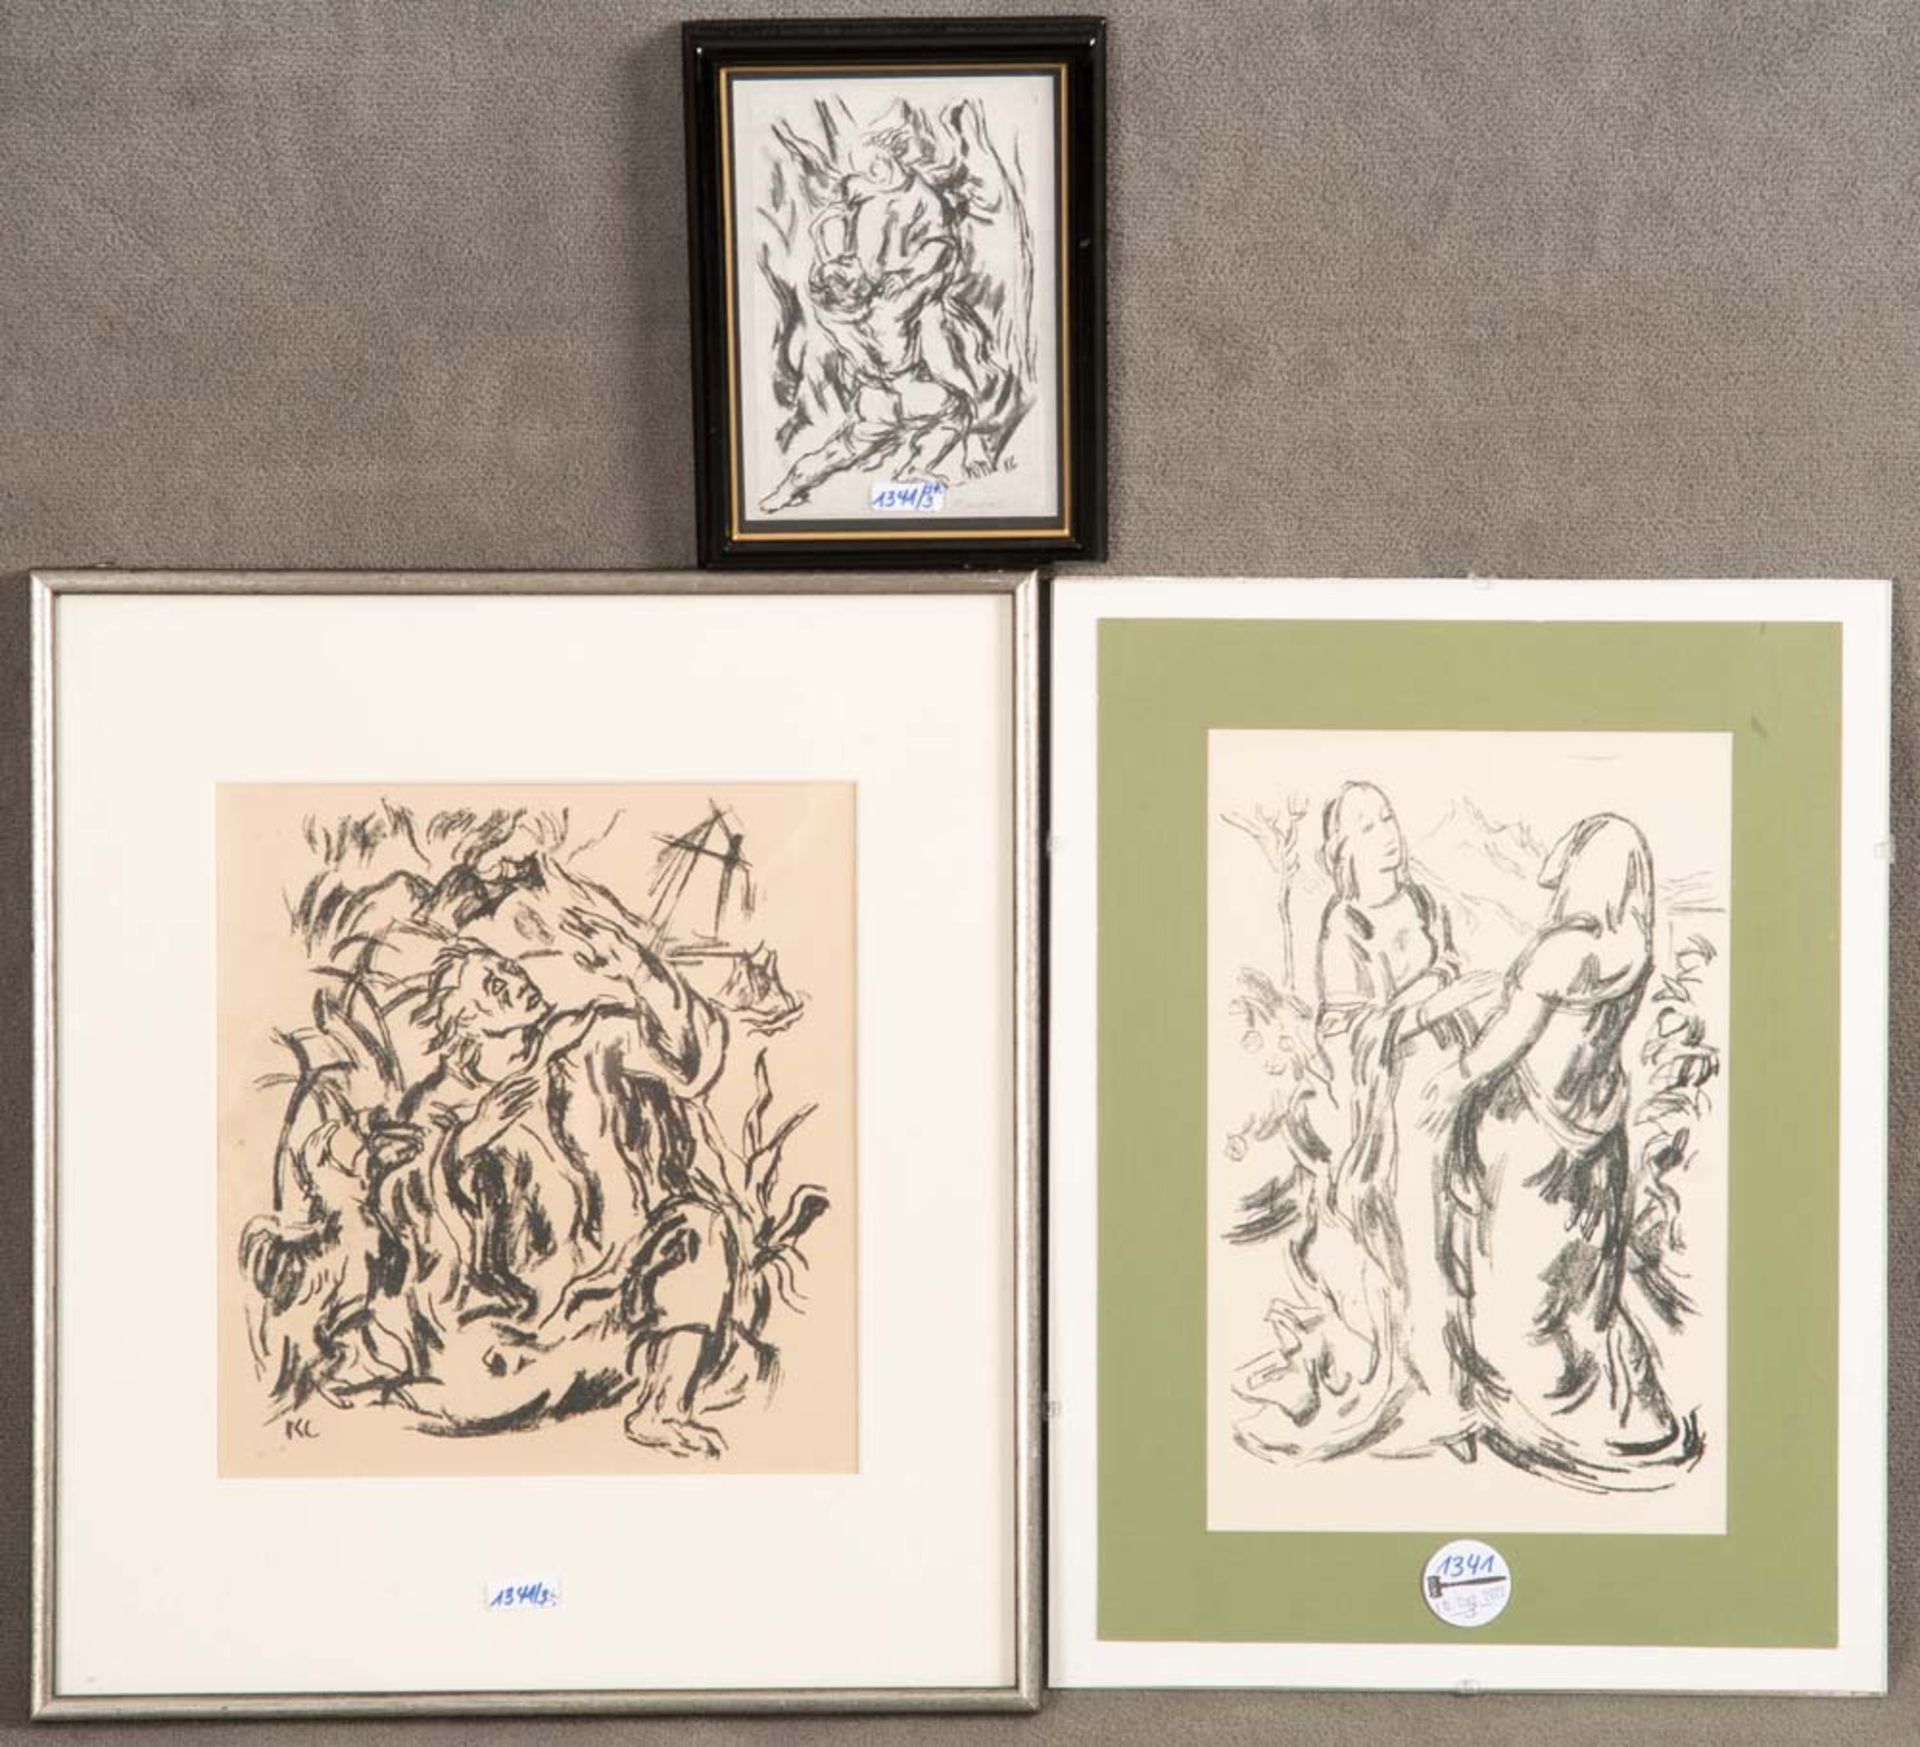 Carl Casper (1879-1956). Drei Figurendarstellungen. Lithographien, davon zwei re. bzw. li./